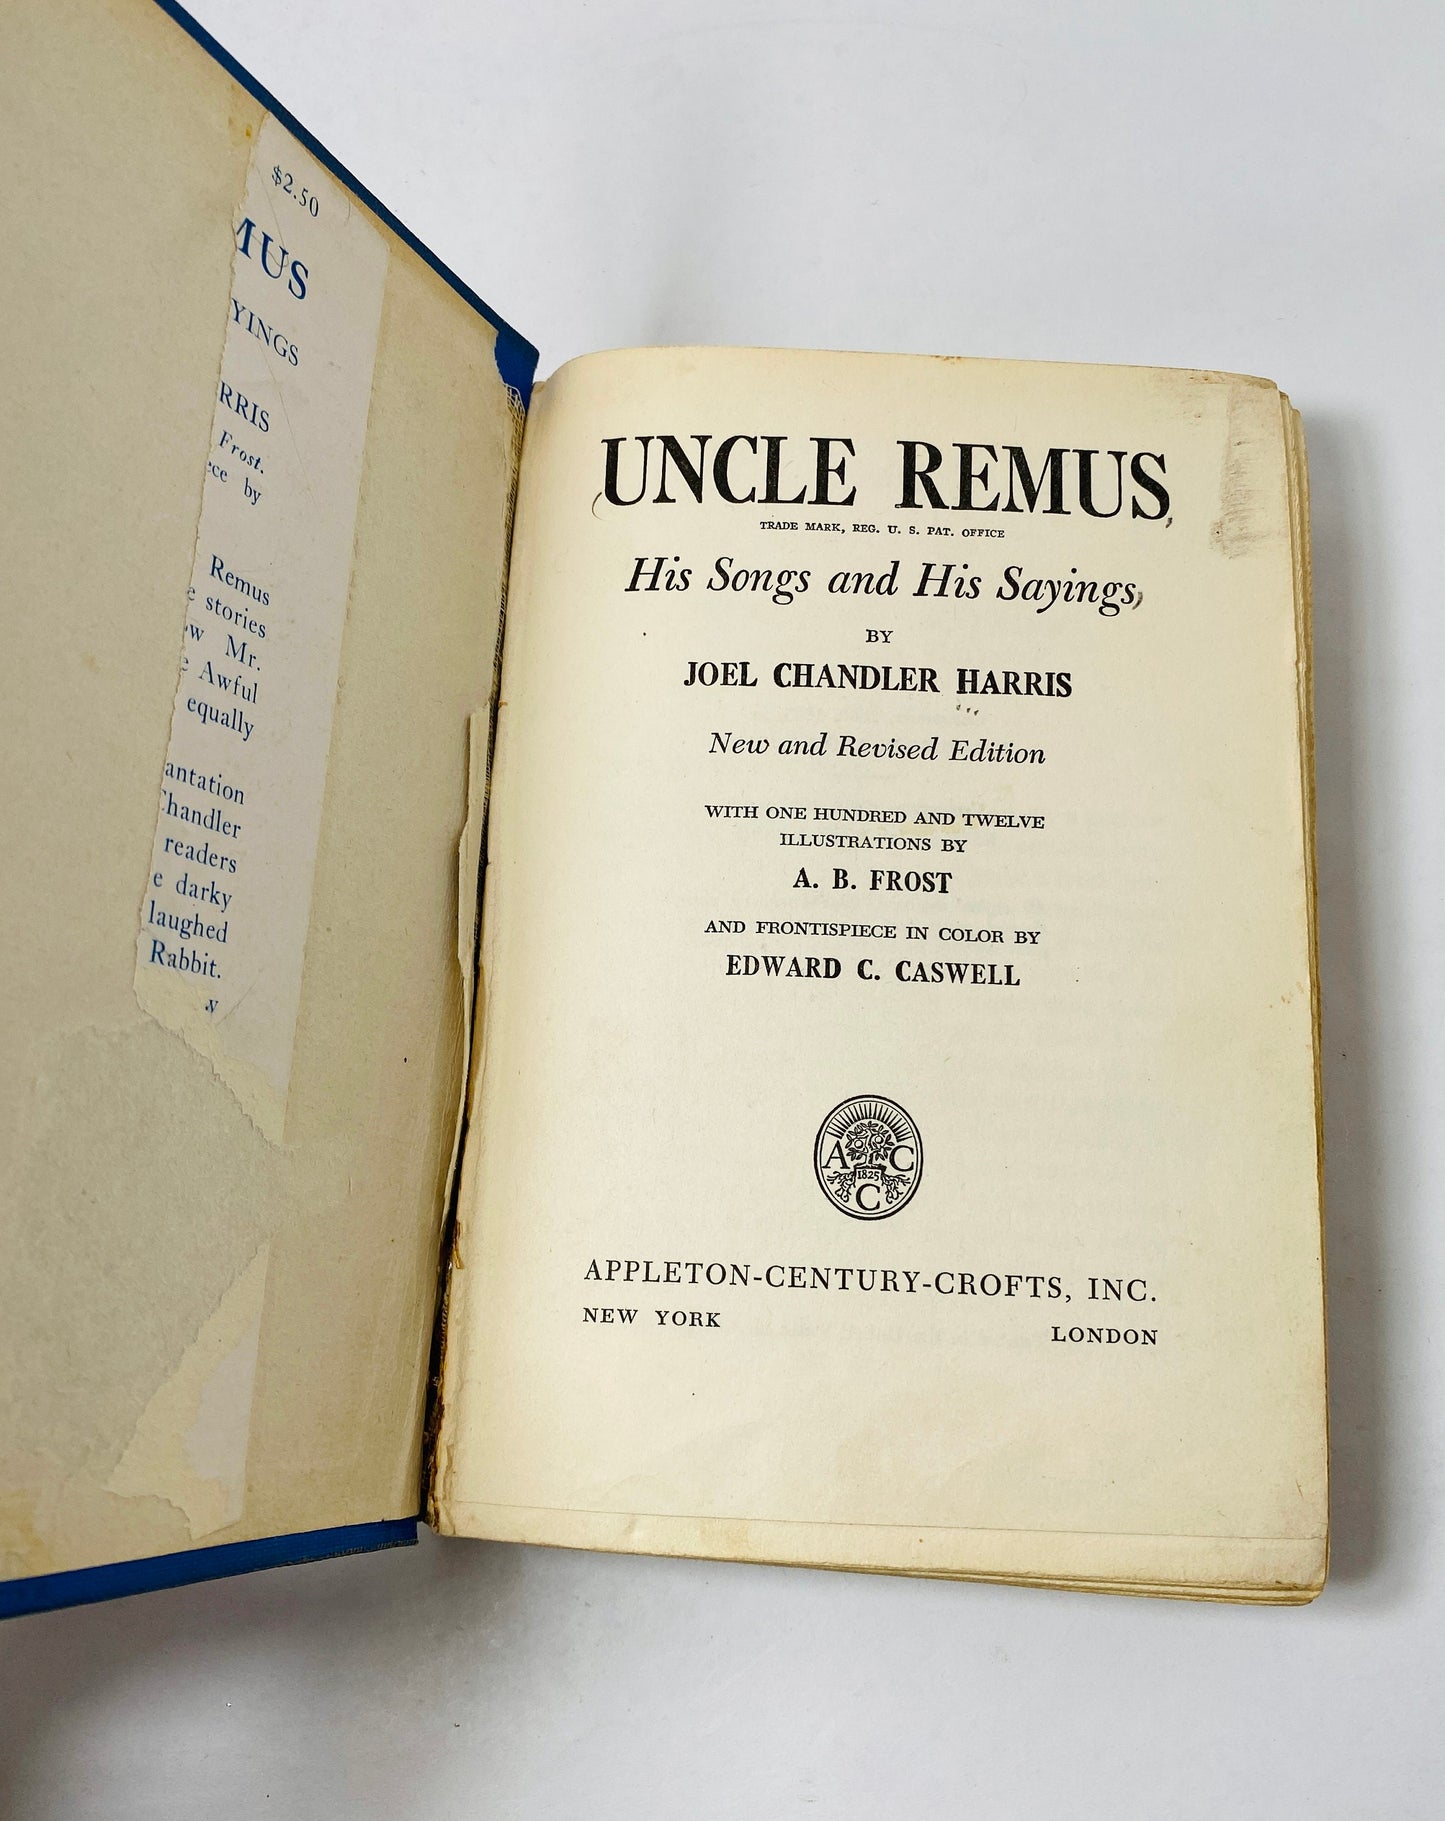 Uncle Remus Stories vintage book circa 1921 by Joel Chandler Harris Aesop's Fables Jean de La Fontaine. Blue bookshelf decor Poor Condition